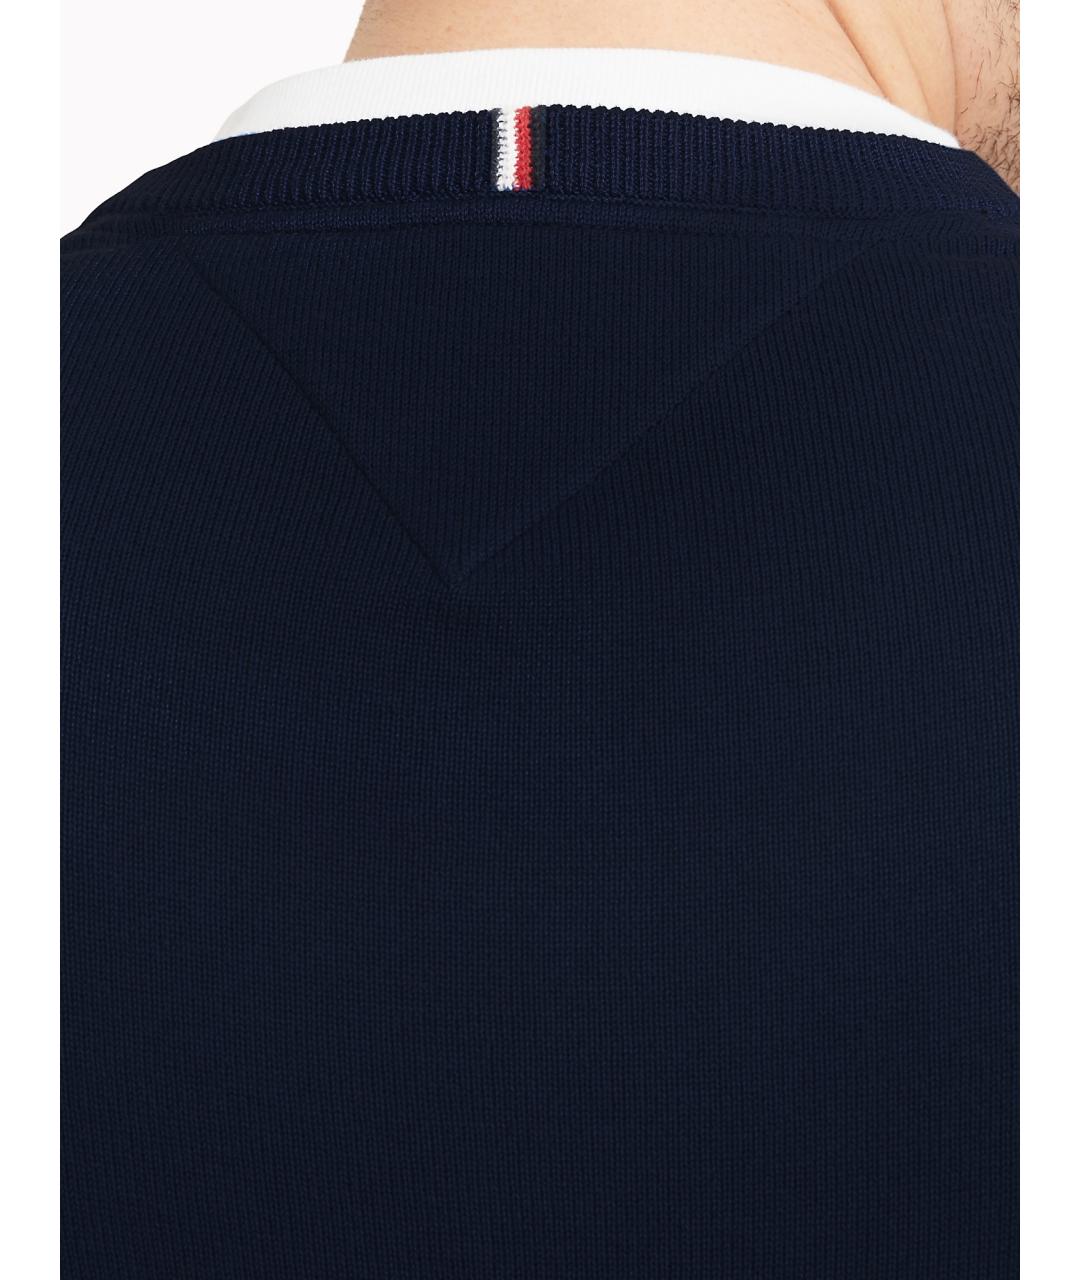 TOMMY HILFIGER Темно-синий хлопковый джемпер / свитер, фото 2